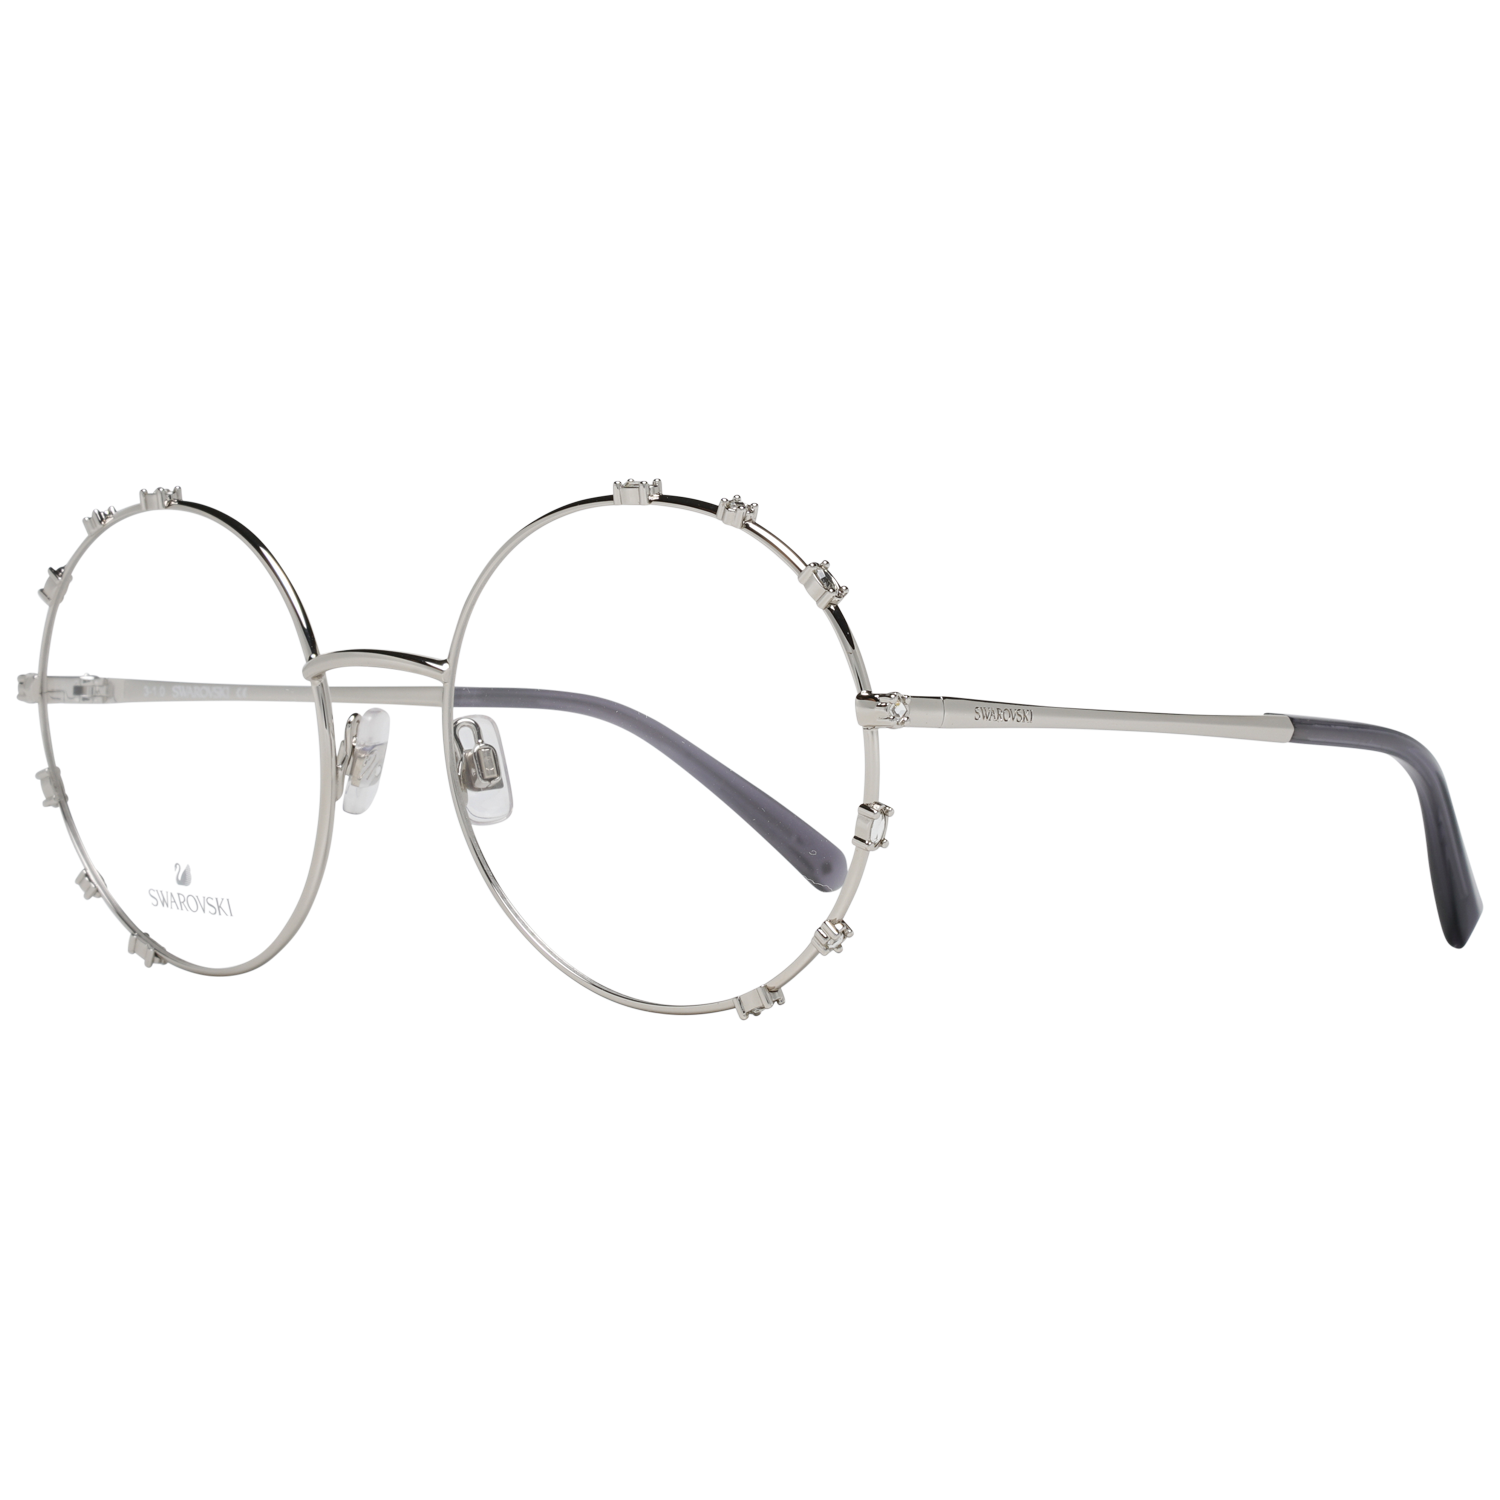 Swarovski Frames Swarovski Women Glasses Optical Frame SK5380 016 57 Eyeglasses Eyewear UK USA Australia 